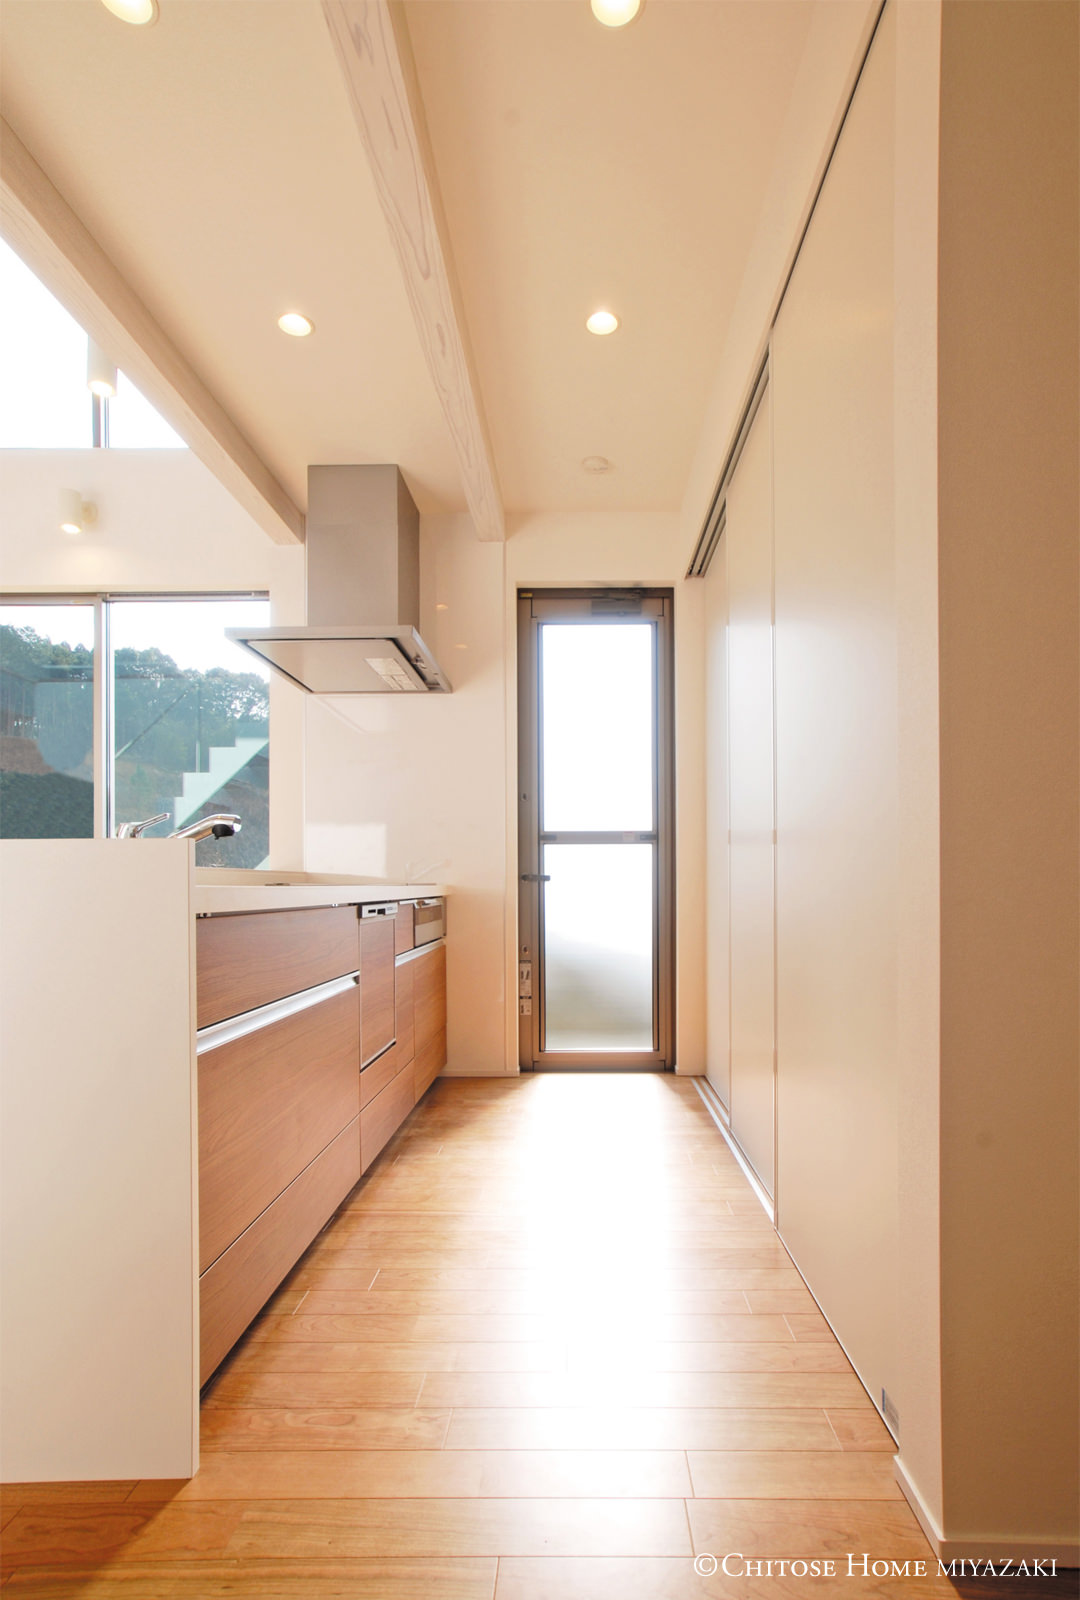 キッチン後部の収納は、パーテーション扉で食器棚を隠せるように。来客時には生活感のあるスペースを見せないように工夫。収納や扉、窓の高さを揃えることも、拡がりの演出の一環。